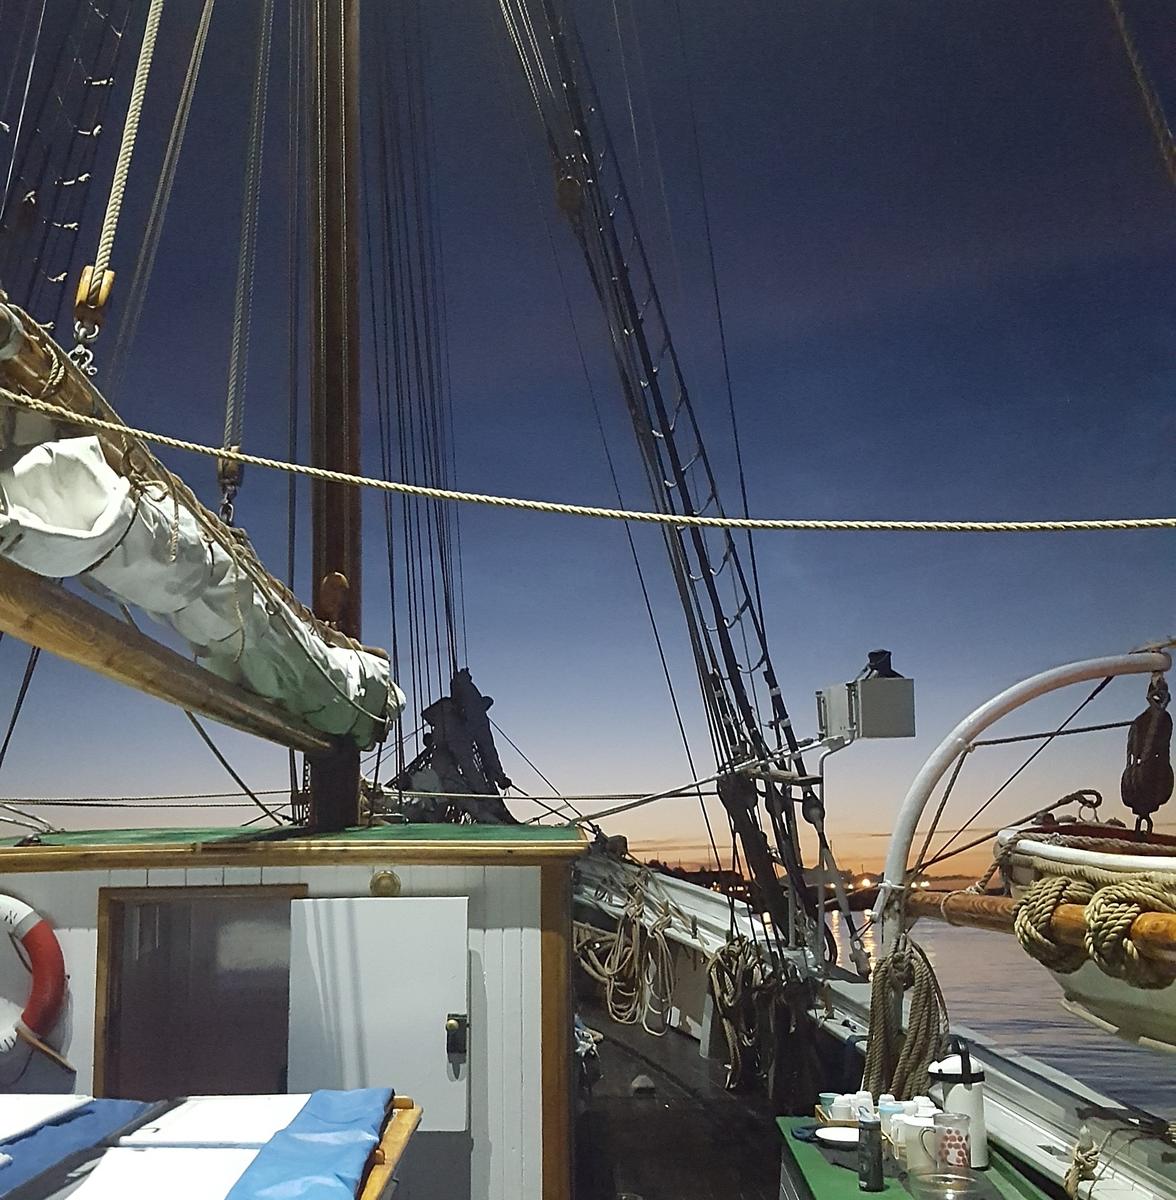 Detalj av skonnerten "Svanen", mast med rigg, detalj av livbåt, mørkeblå himmel.